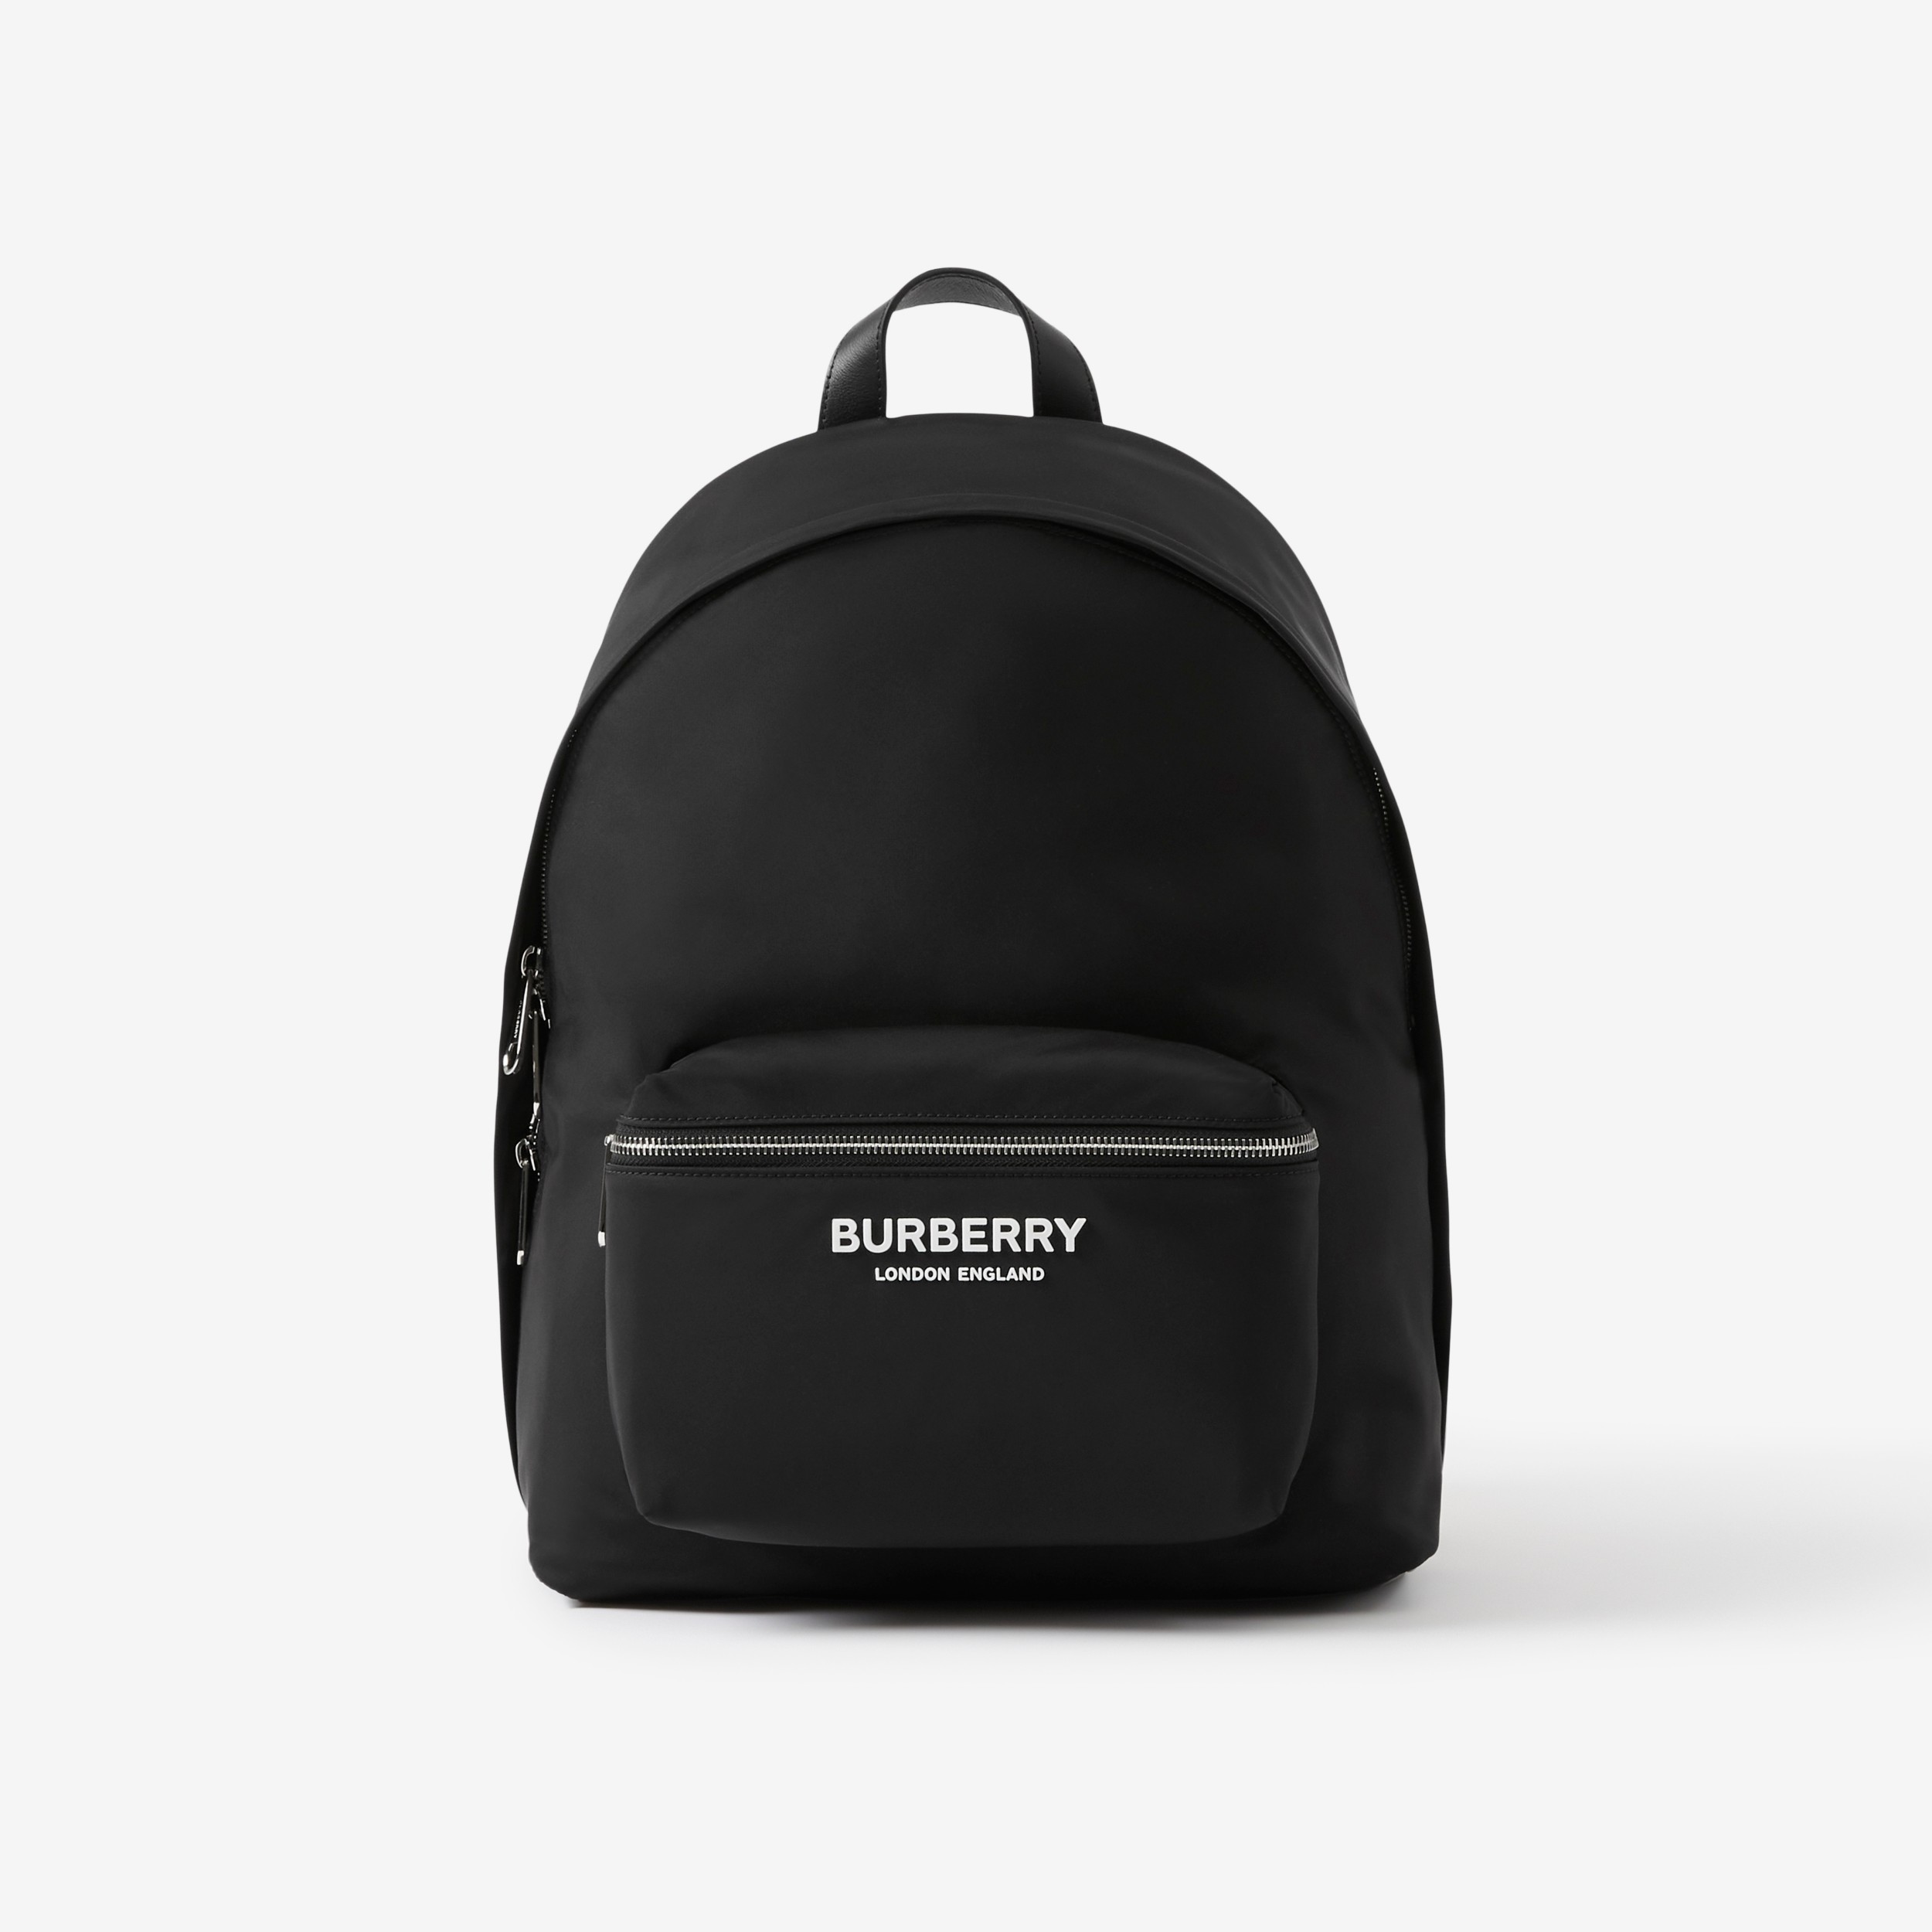 Actualizar 55+ imagen burberry black backpack